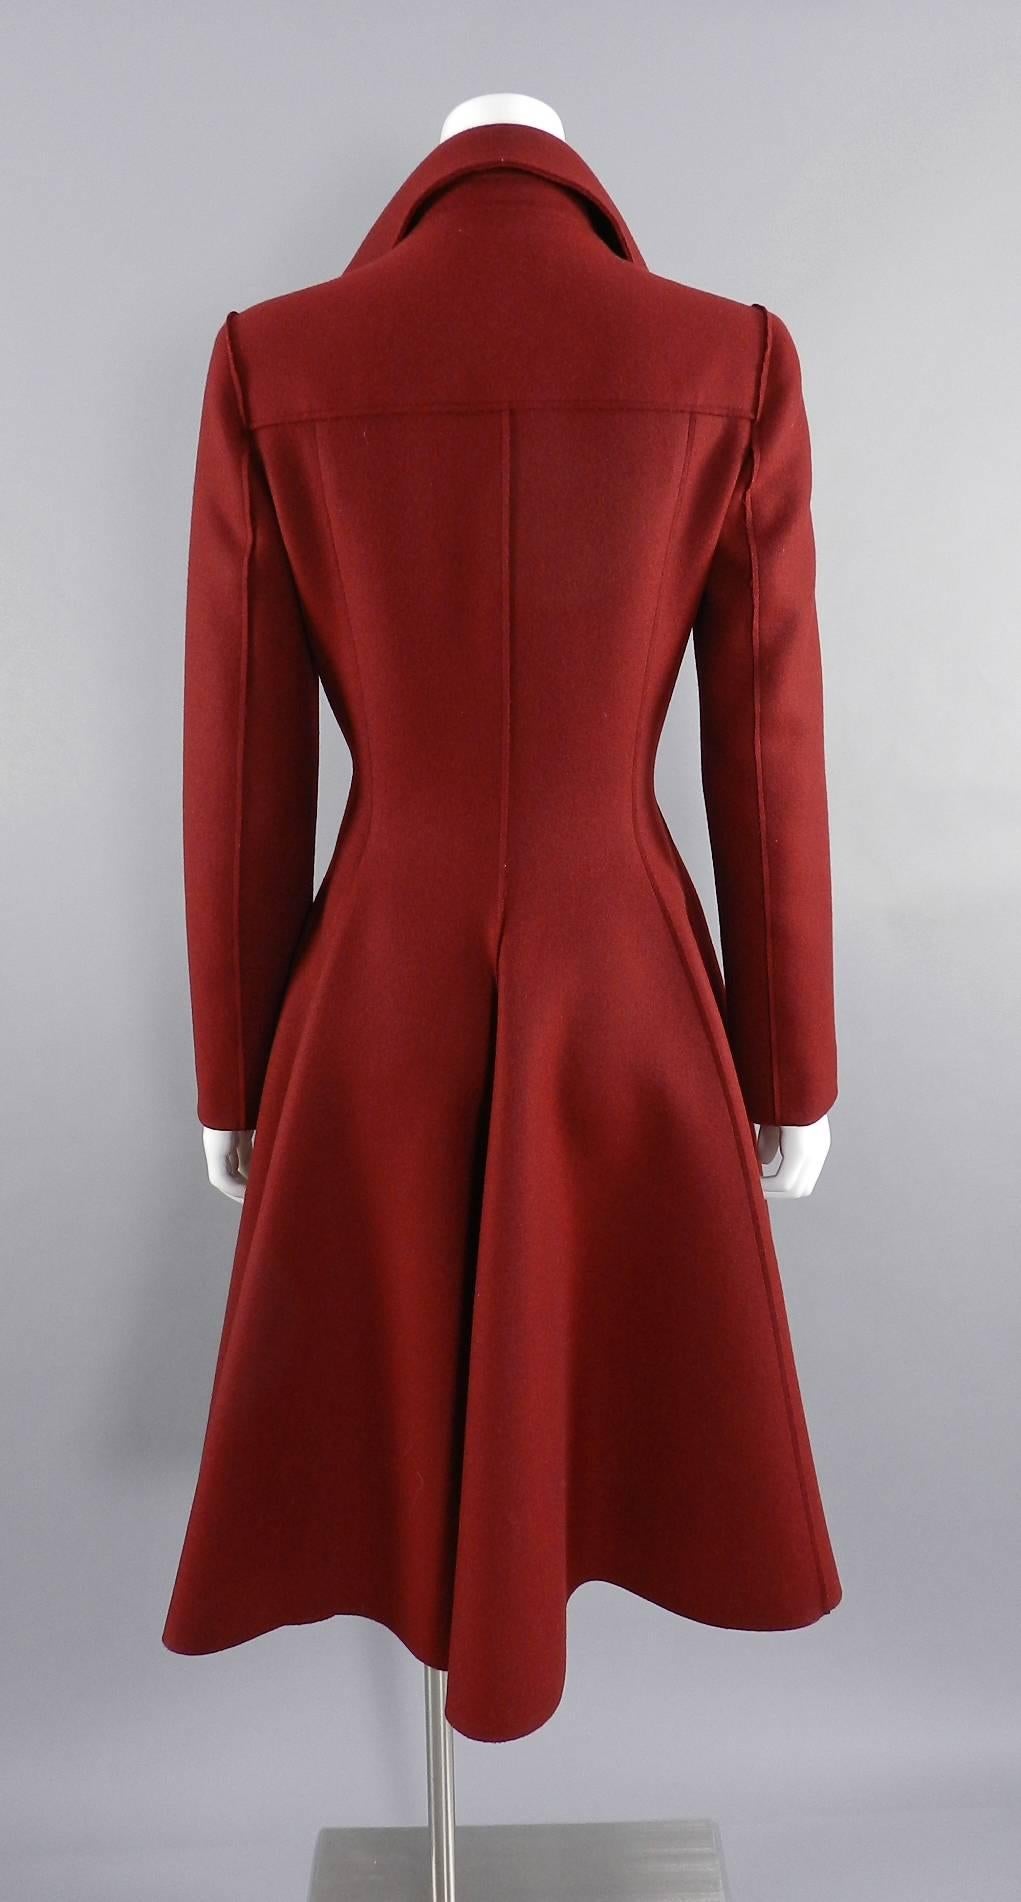 Lanvin fall 2013 Red Wool Princess Cut Coat 1